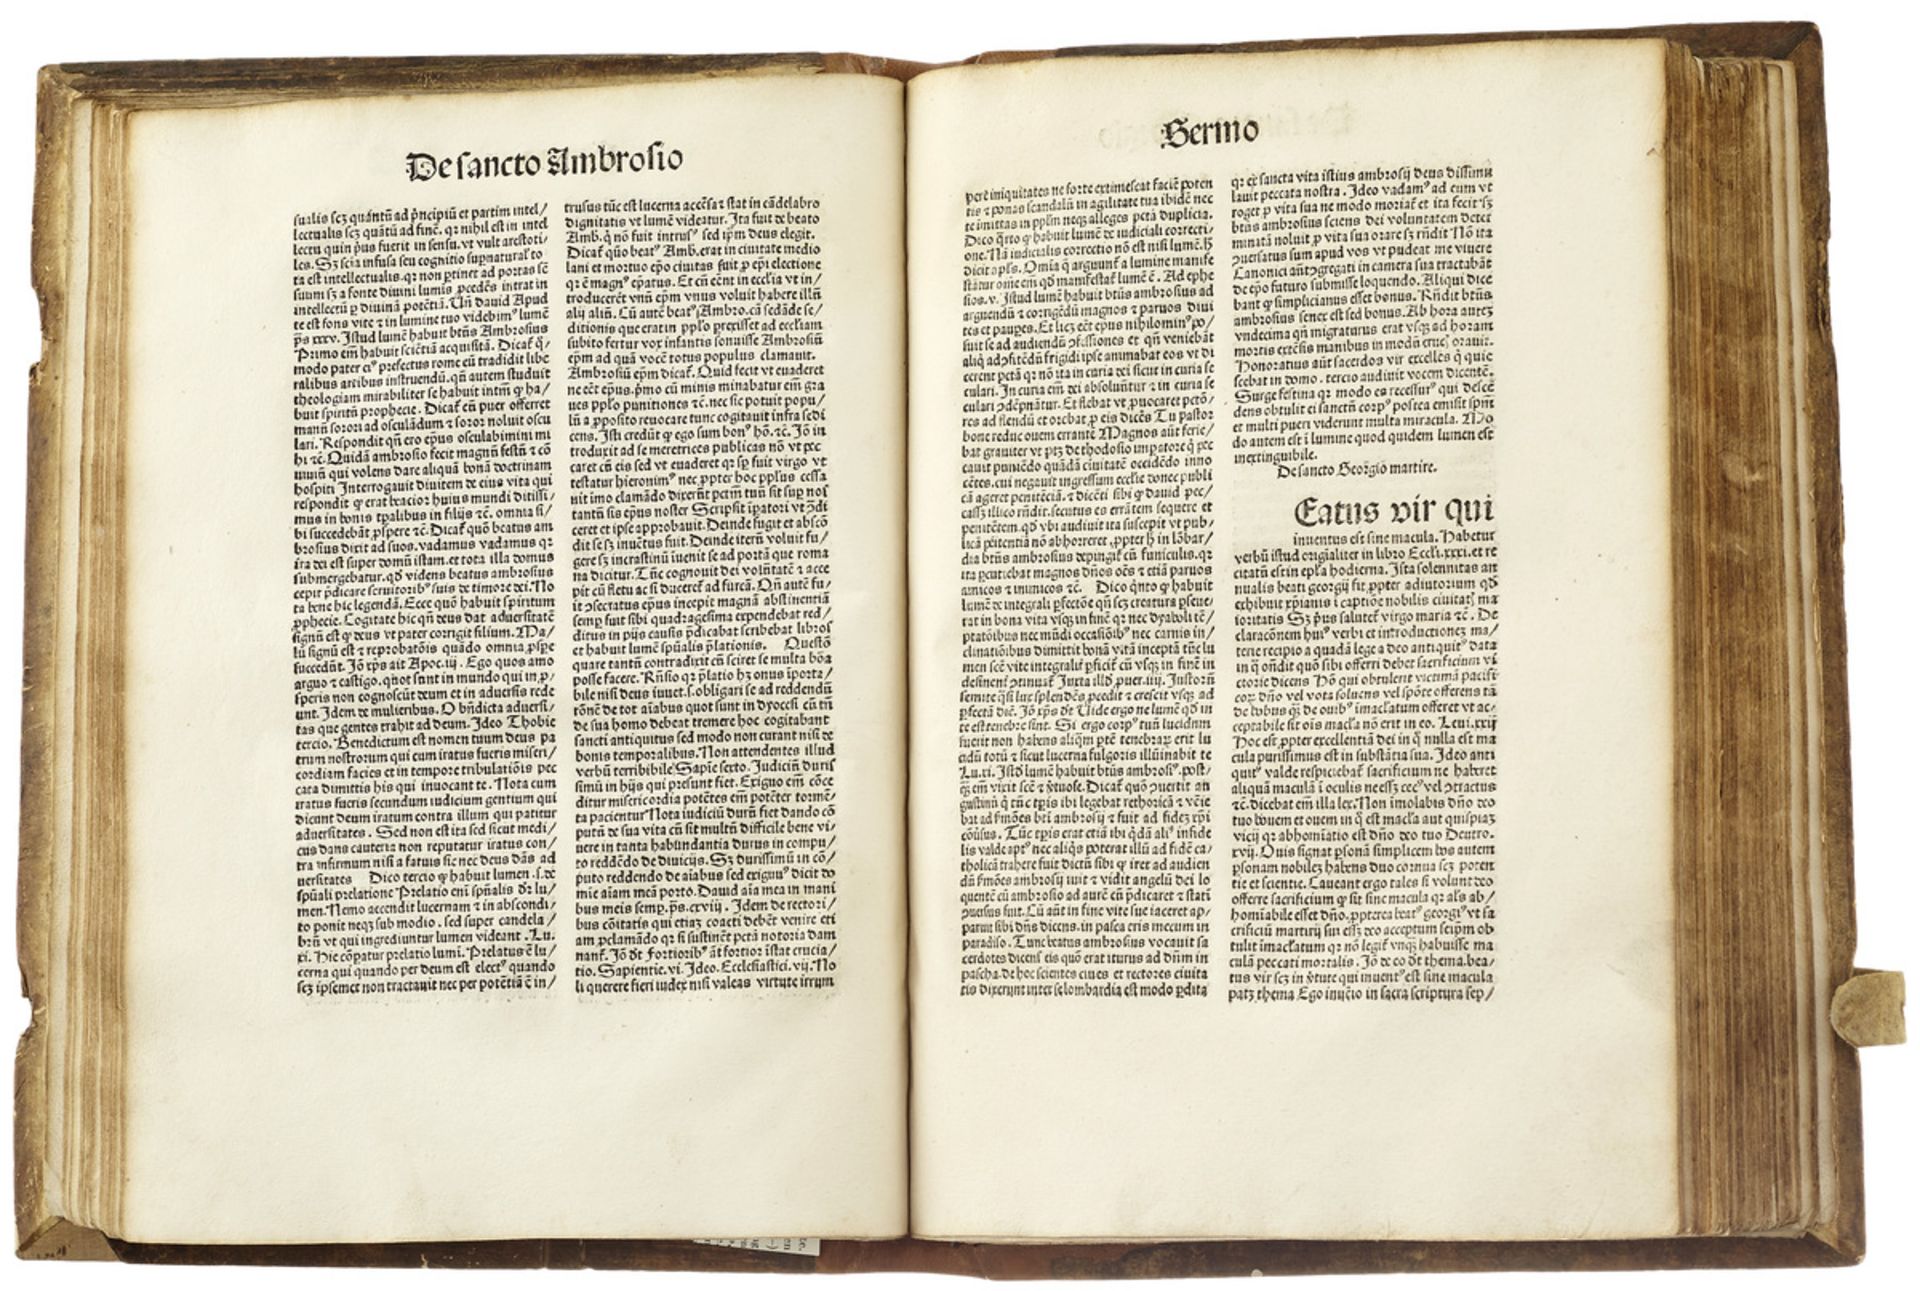 InkunabelFerrerius Vincentus. Sermones de sanctis. Pars III. Köln (Heinrich Quentell), 1487. 137 (